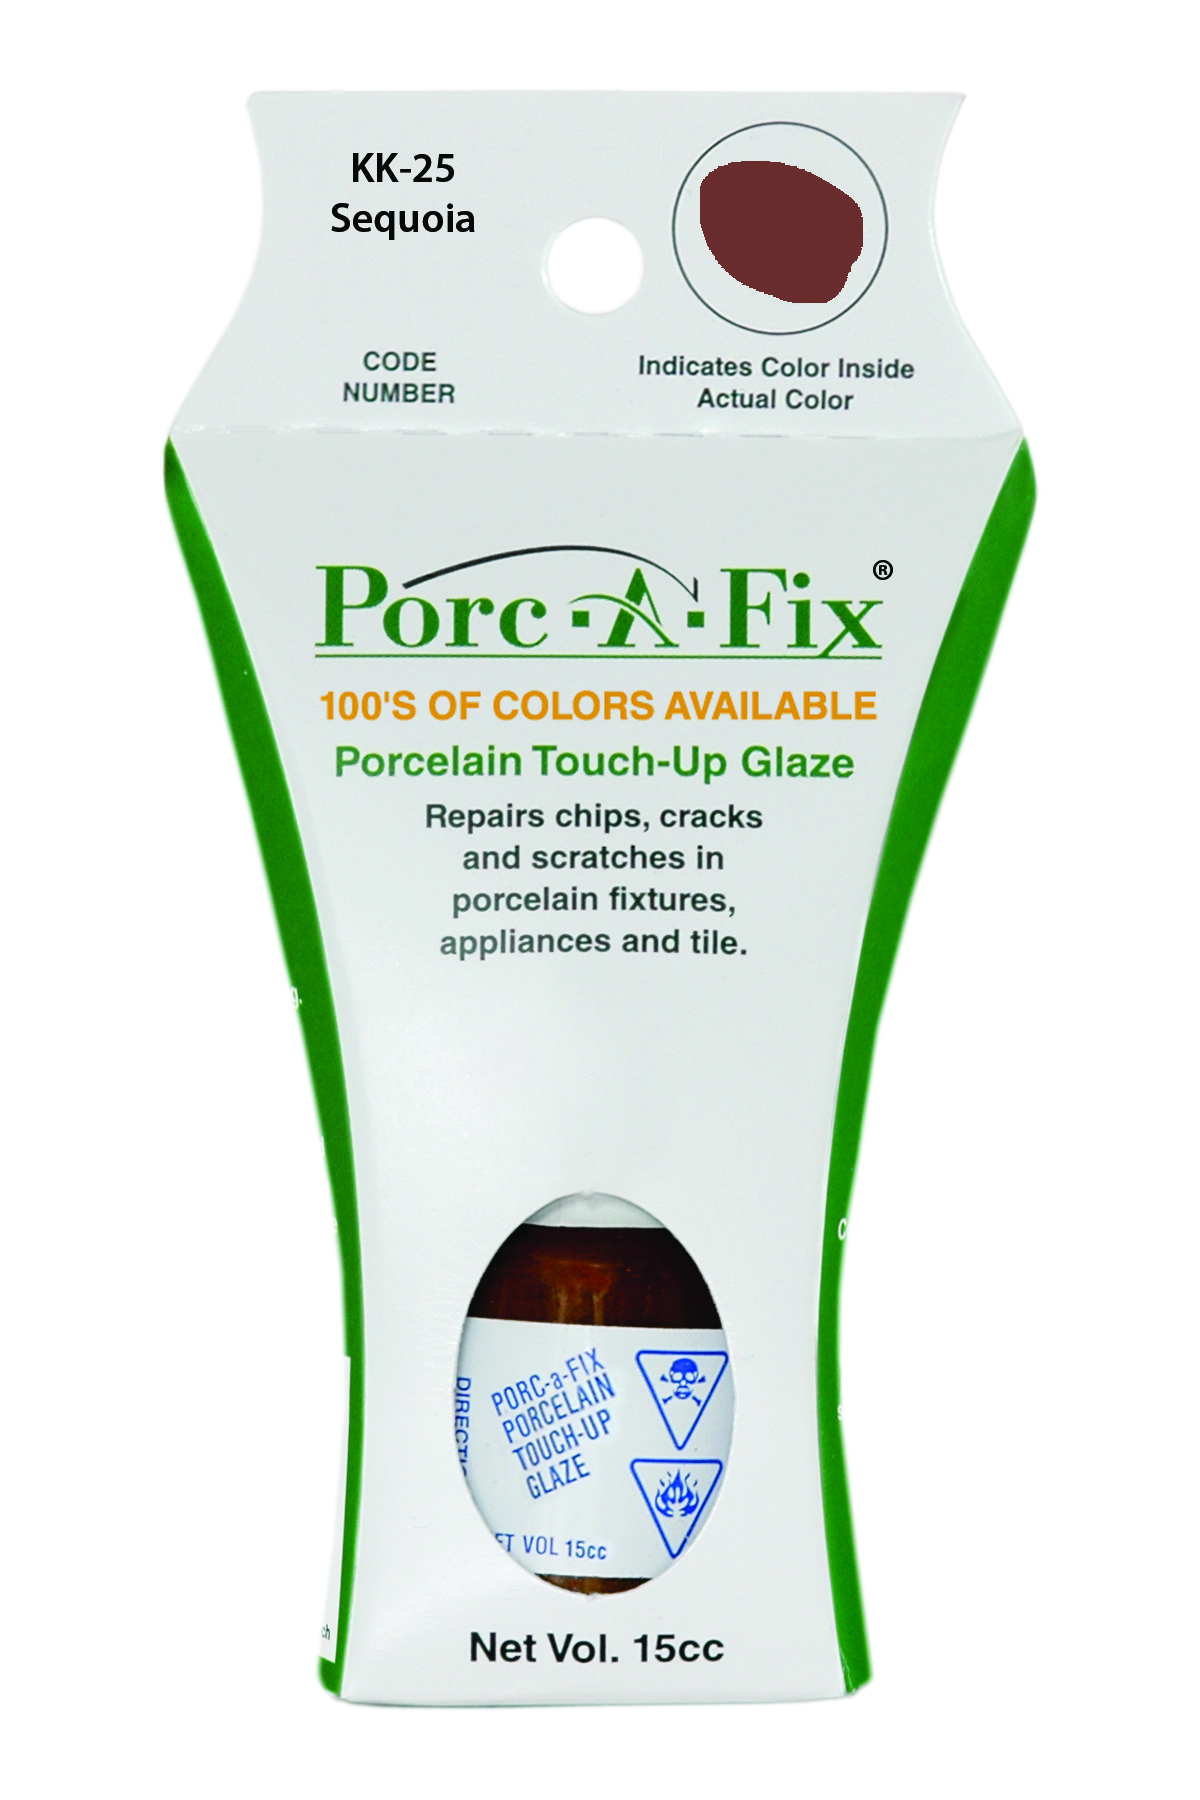 Fixture-Fix | KK-25 | Porc-A-Fix Touch-Up Glaze Kohler Sequoia - Compatible with Kohler K-500306-43 Touch Up Paint Kit - SEQUOIA